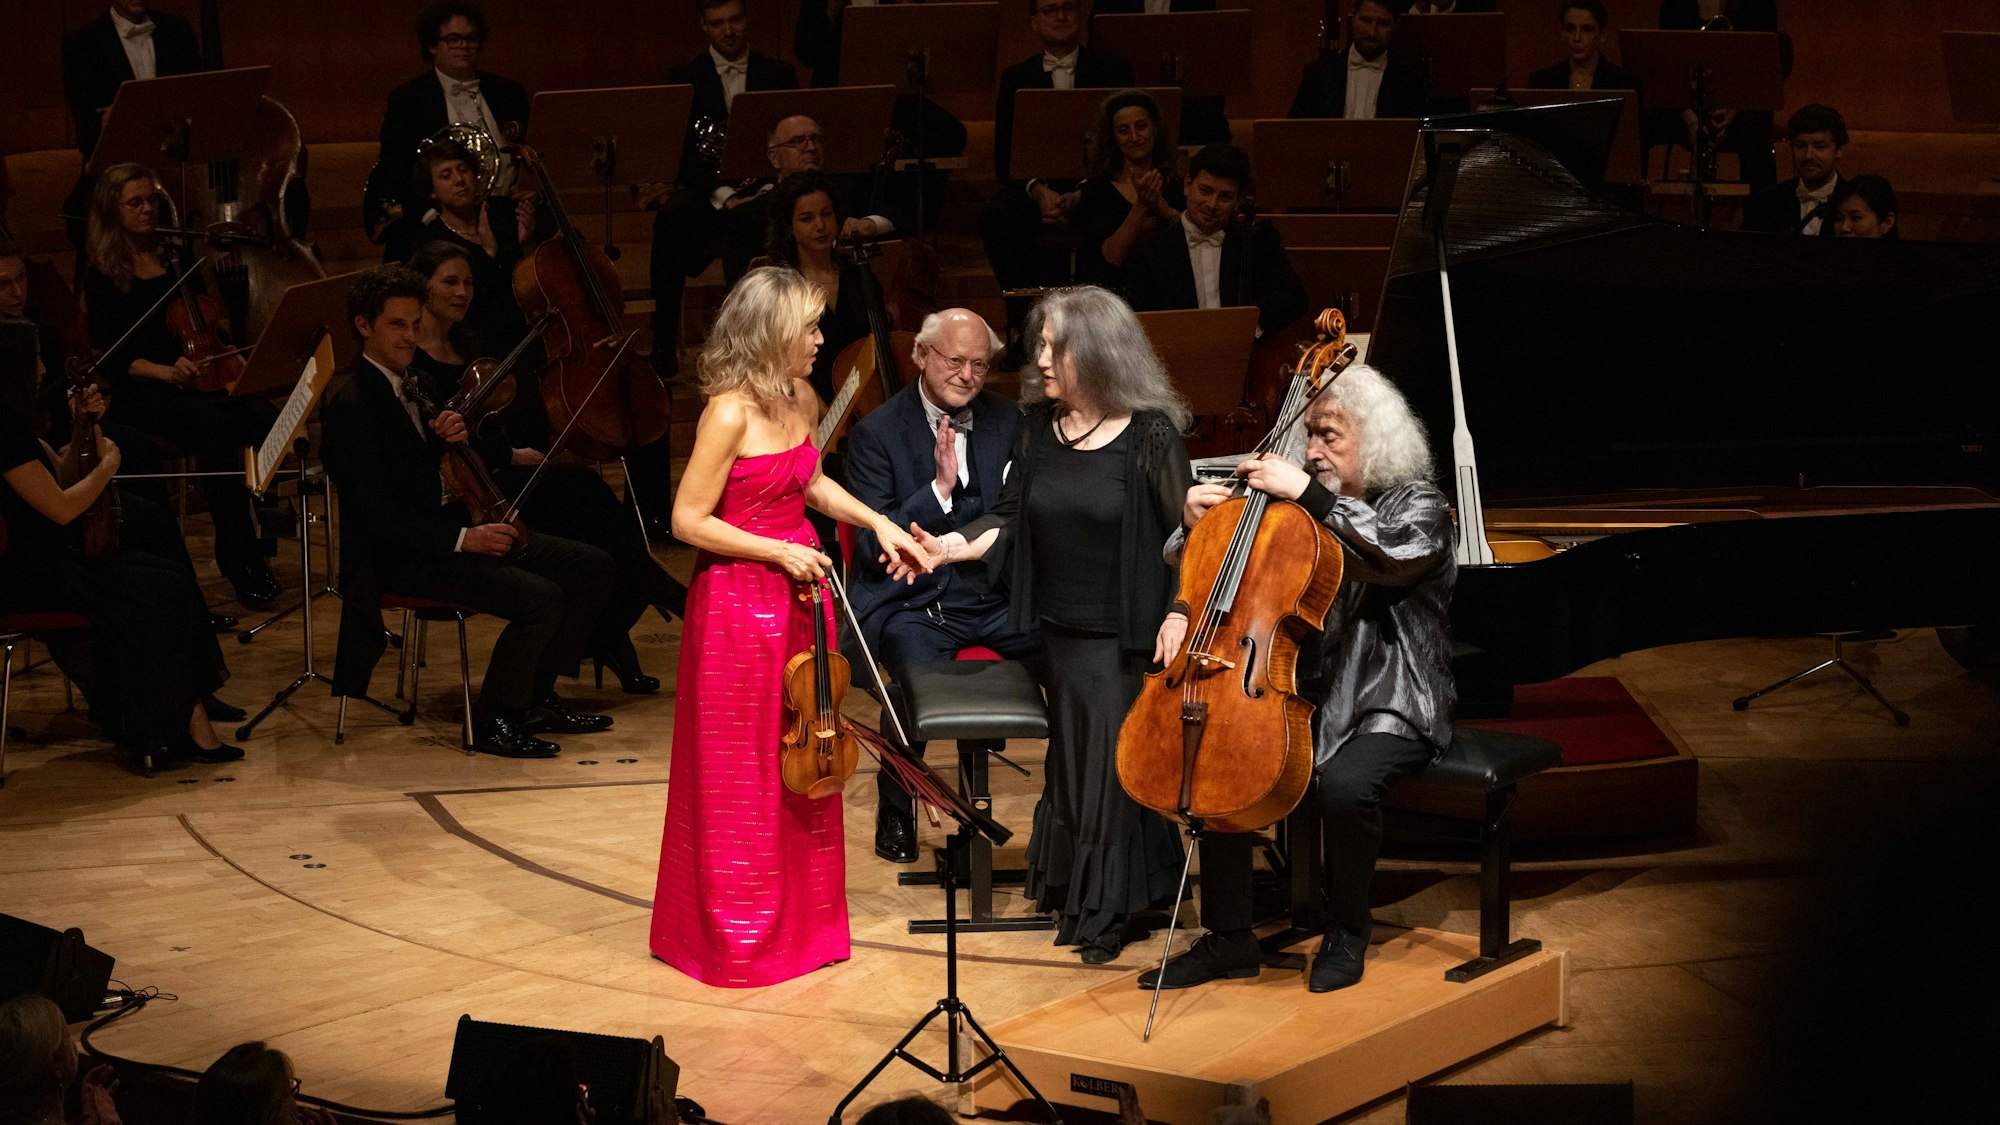 Anne-Sophie Mutter trägt ein magentafarbenes Kleid und gibt Martha Argerich die Hand. Daneben sitzt Mischa Maisky mit seinem Cello.